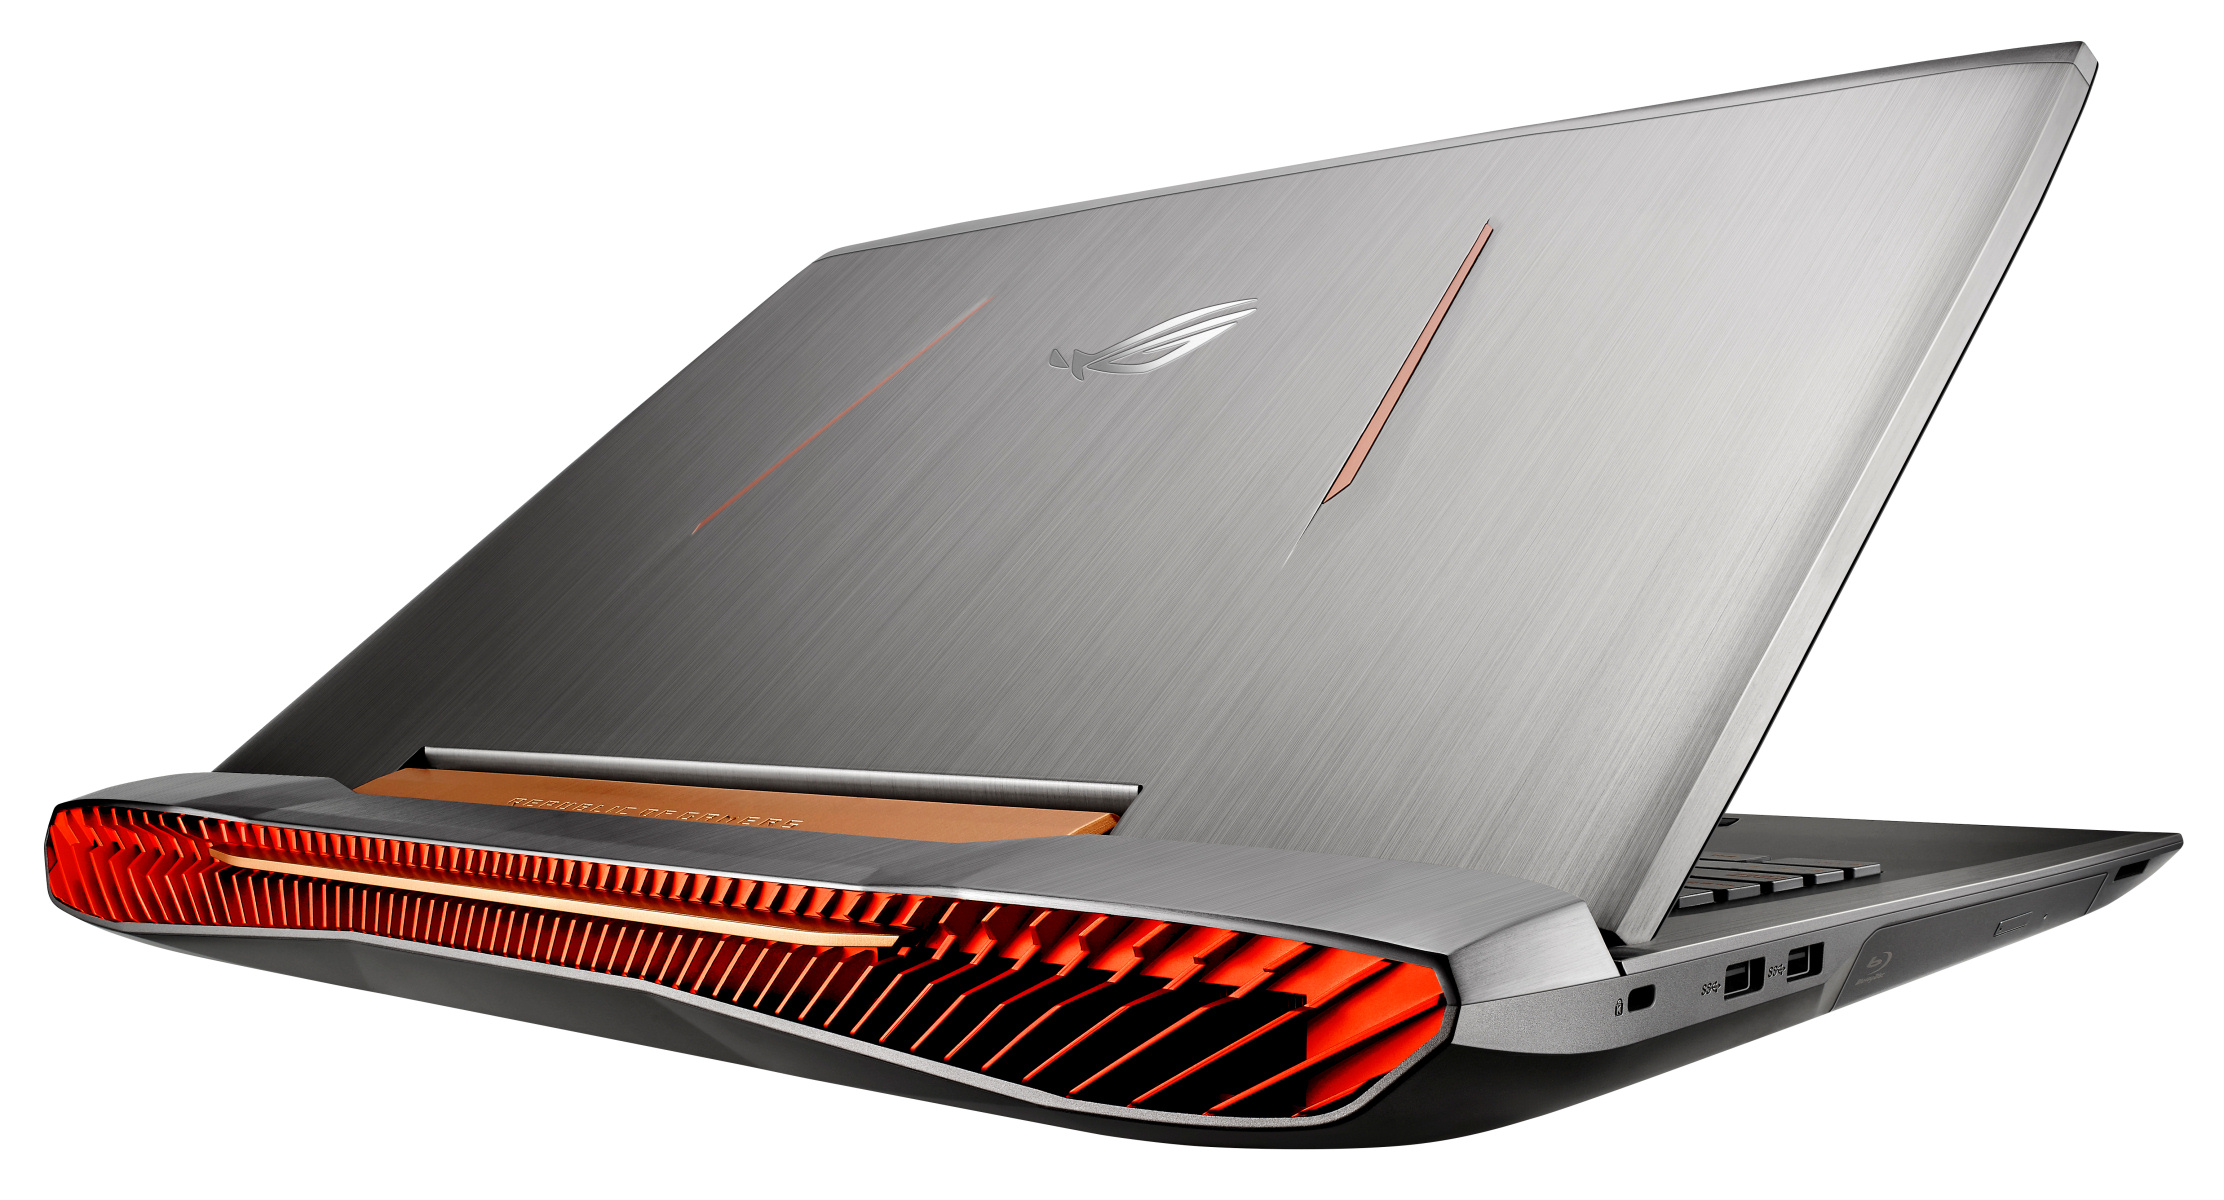 GeForce GTX 1070-grafikkortet producerer en hel del varme, så ventilationsristene fyldet hele bagsiden af computeren.